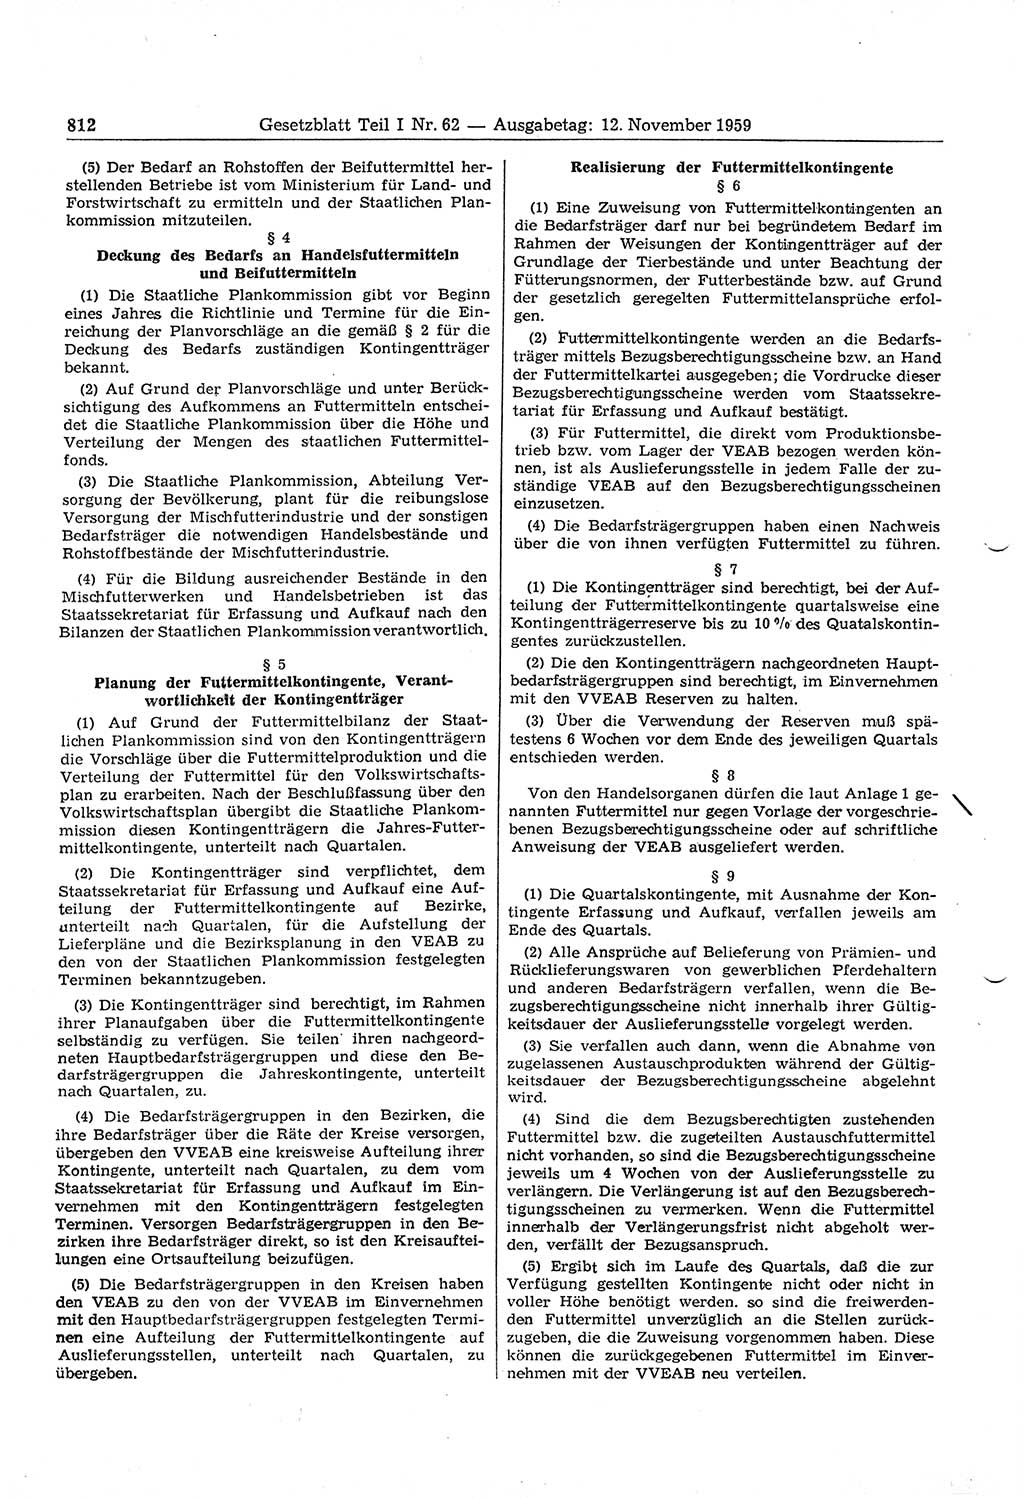 Gesetzblatt (GBl.) der Deutschen Demokratischen Republik (DDR) Teil Ⅰ 1959, Seite 812 (GBl. DDR Ⅰ 1959, S. 812)